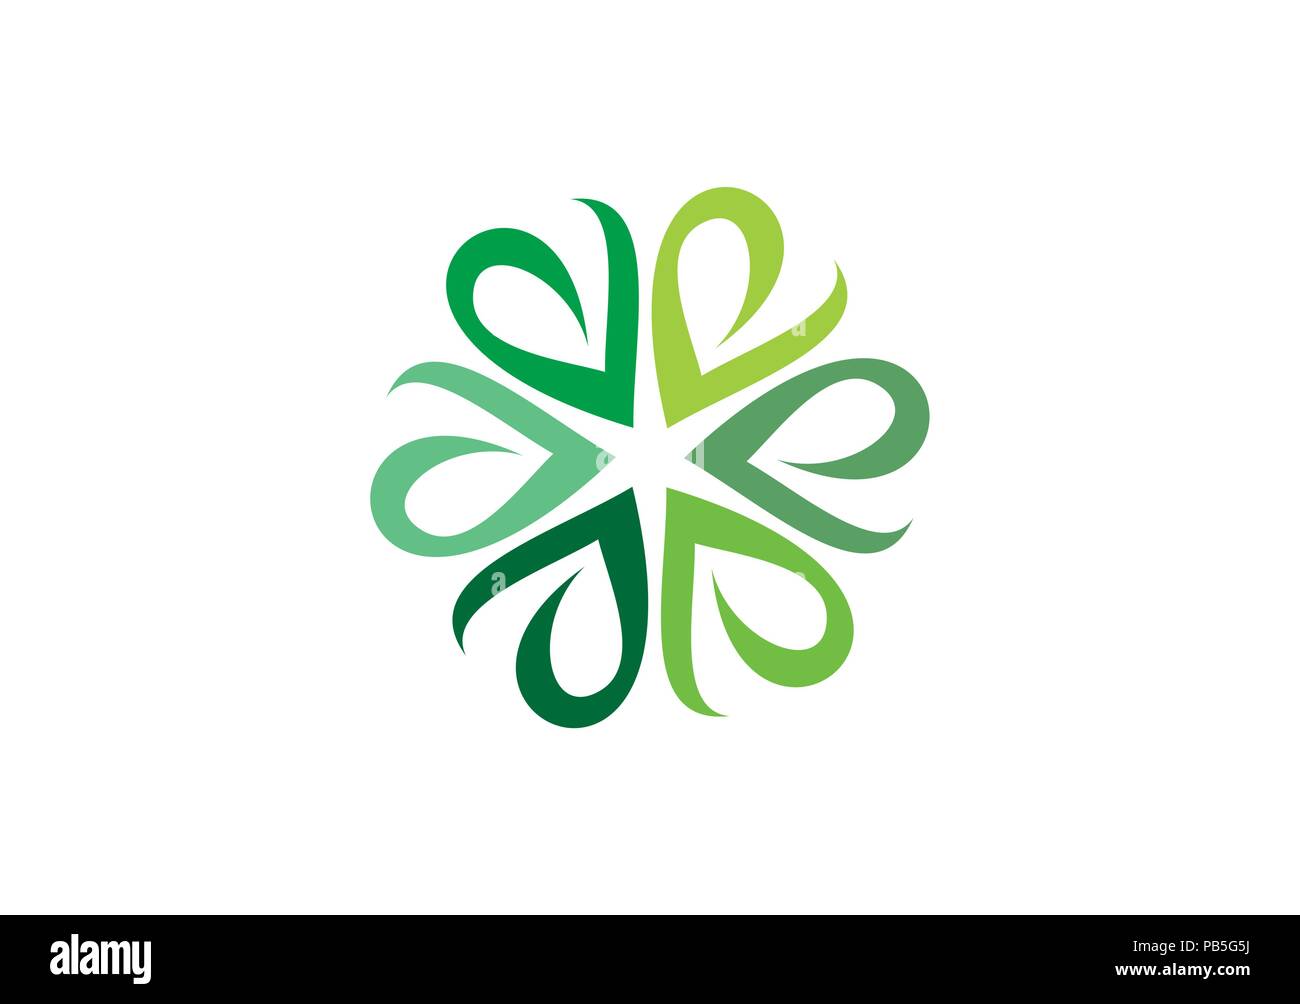 Círculo verde deja de logotipo, símbolo botánica hierba ecológica, natural de hojas verdes letras e icono de diseño vectorial Ilustración del Vector